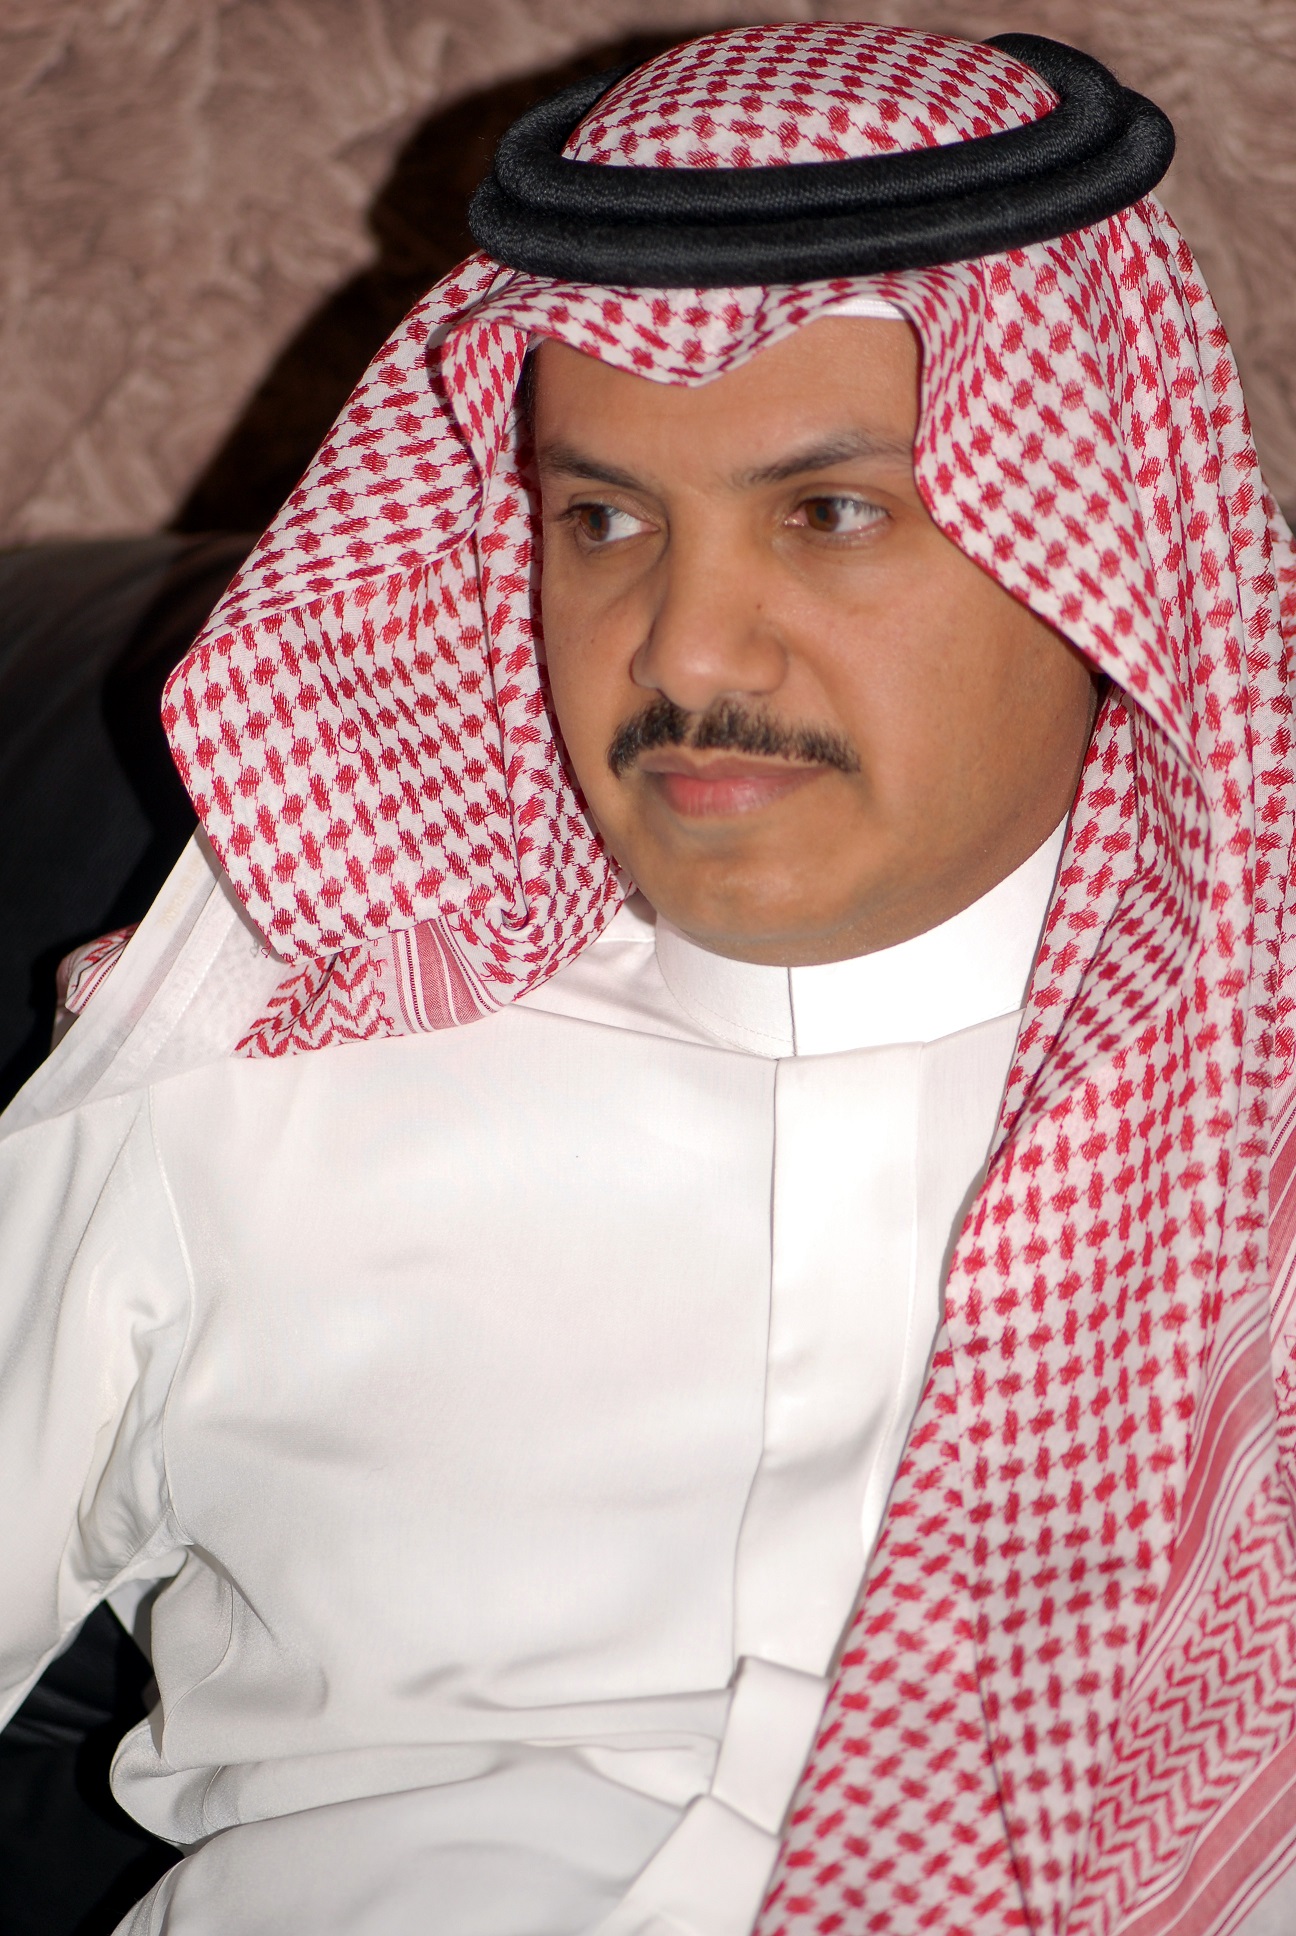 2- Nasser Al Qahtani